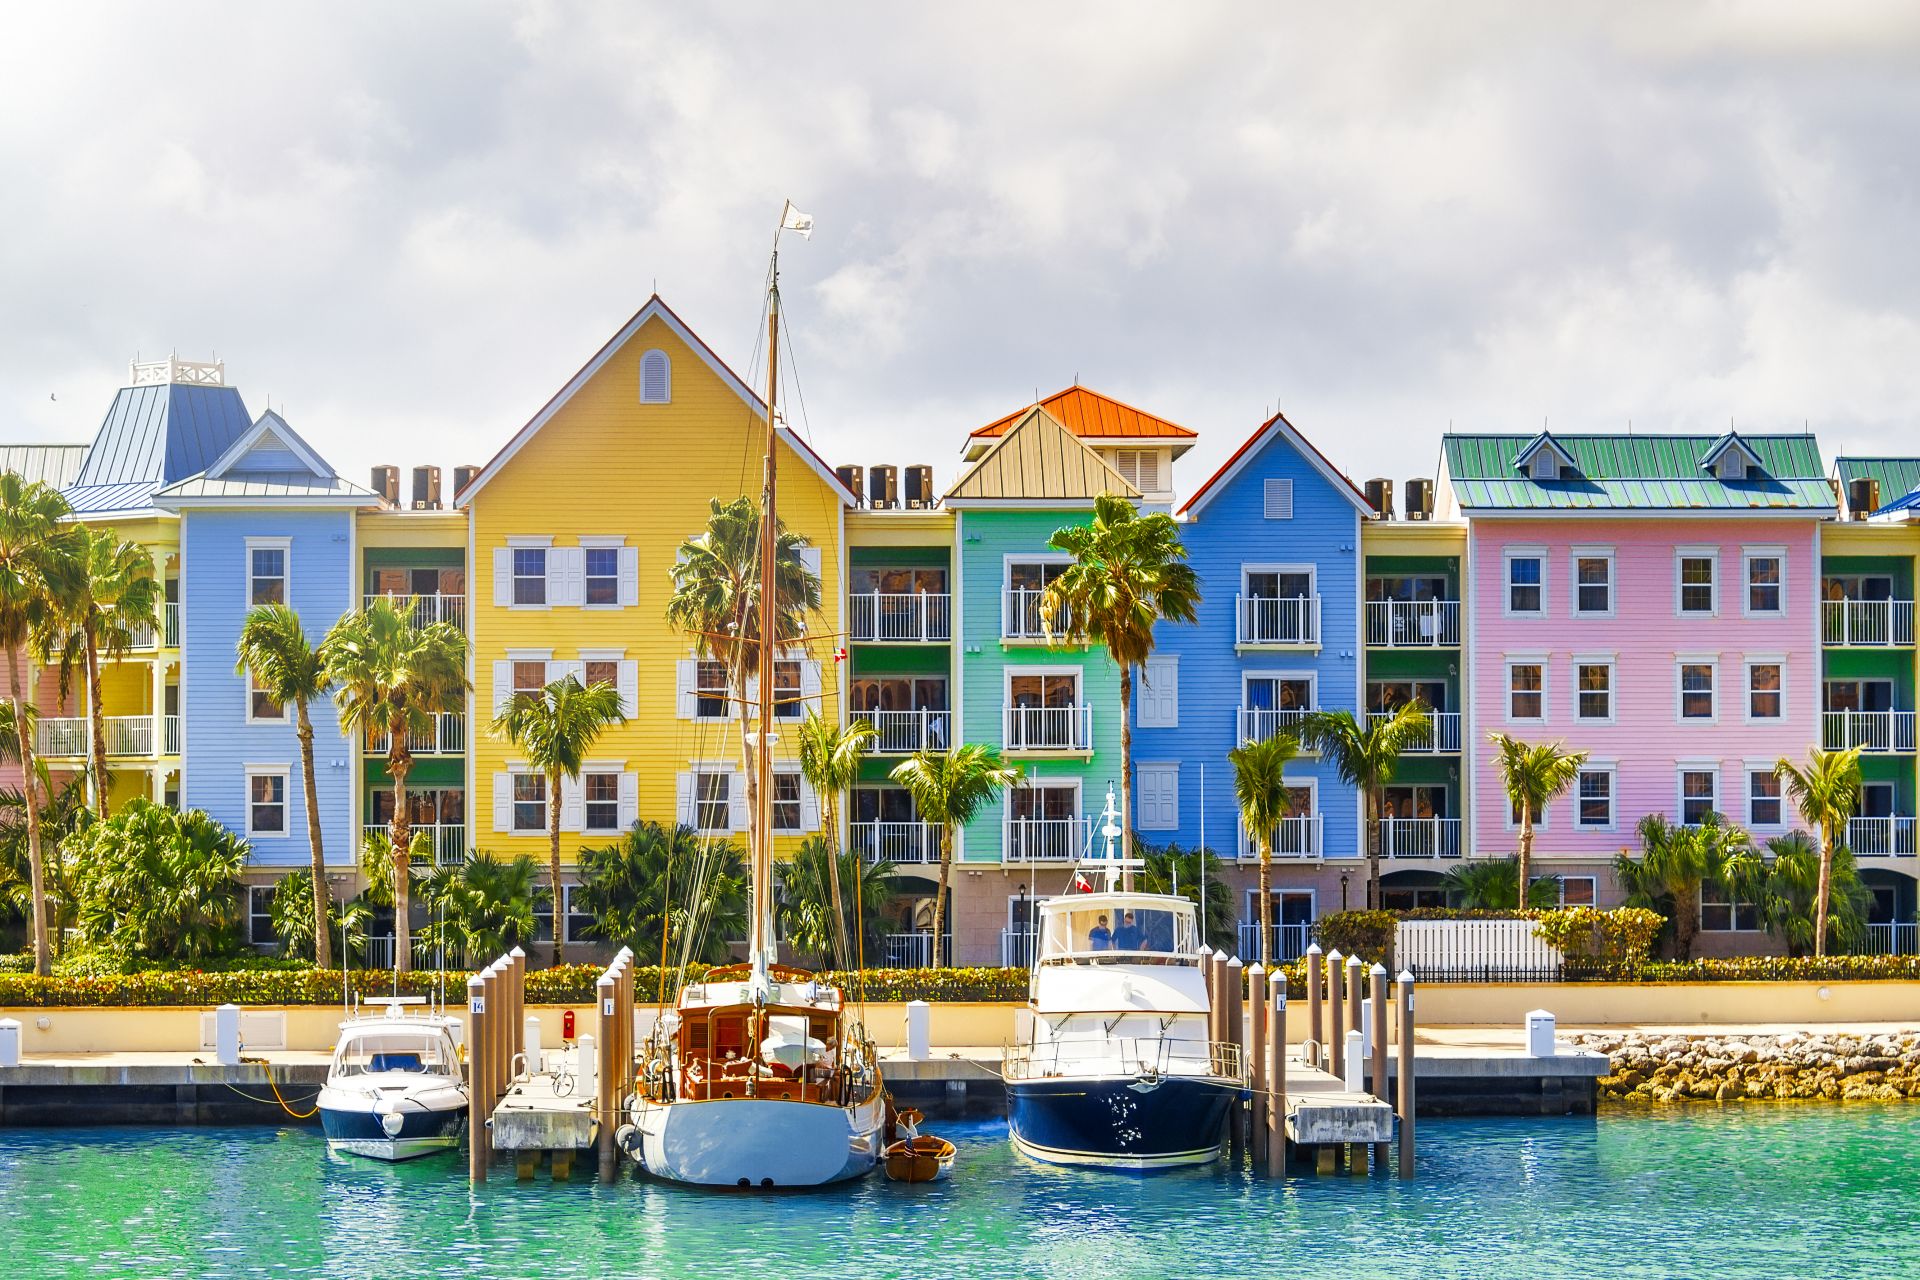 Разноцветные дома на побережье Нассау, Багамские острова.